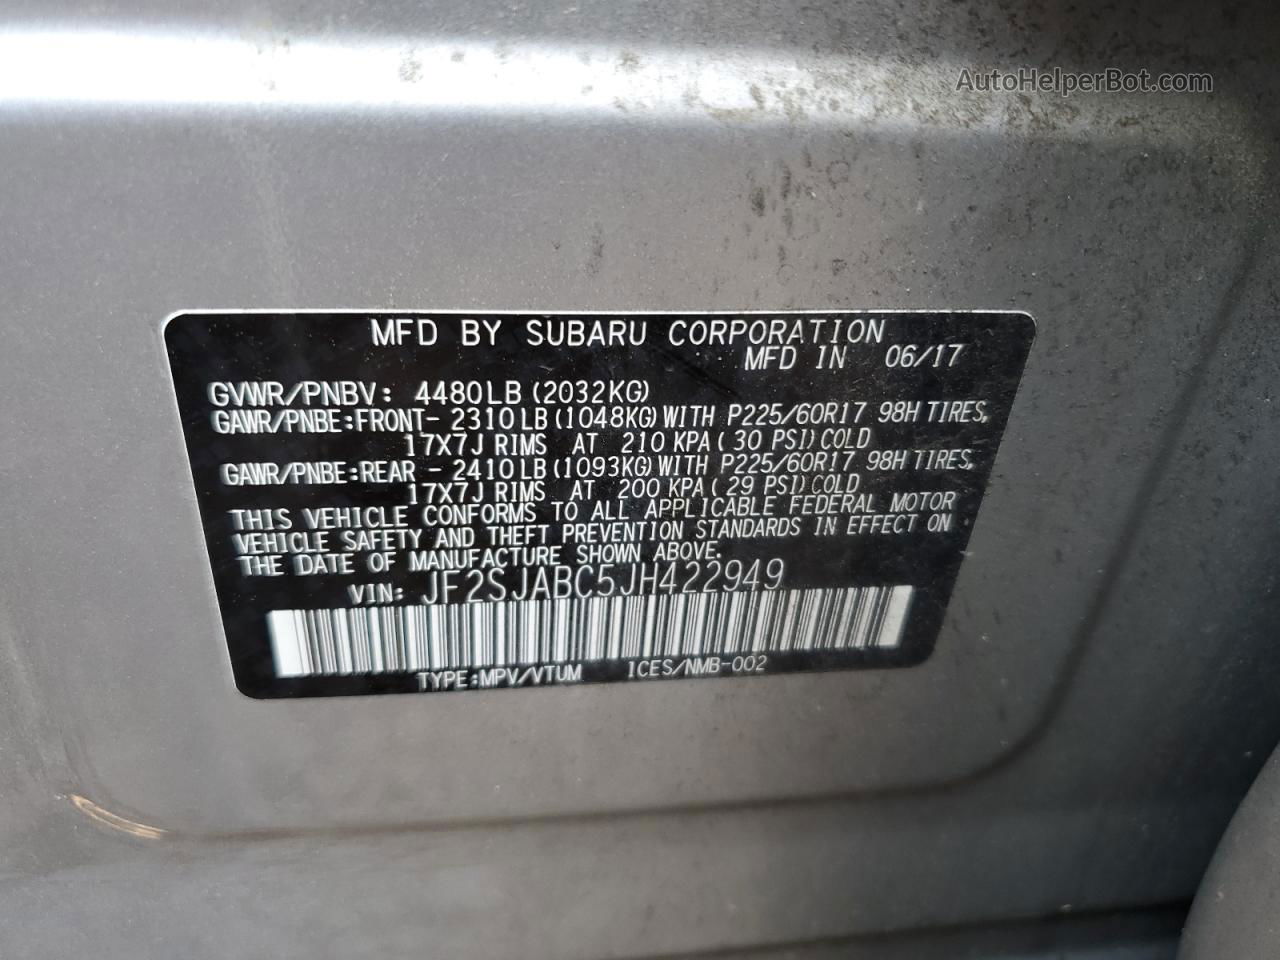 2018 Subaru Forester 2.5i Silver vin: JF2SJABC5JH422949